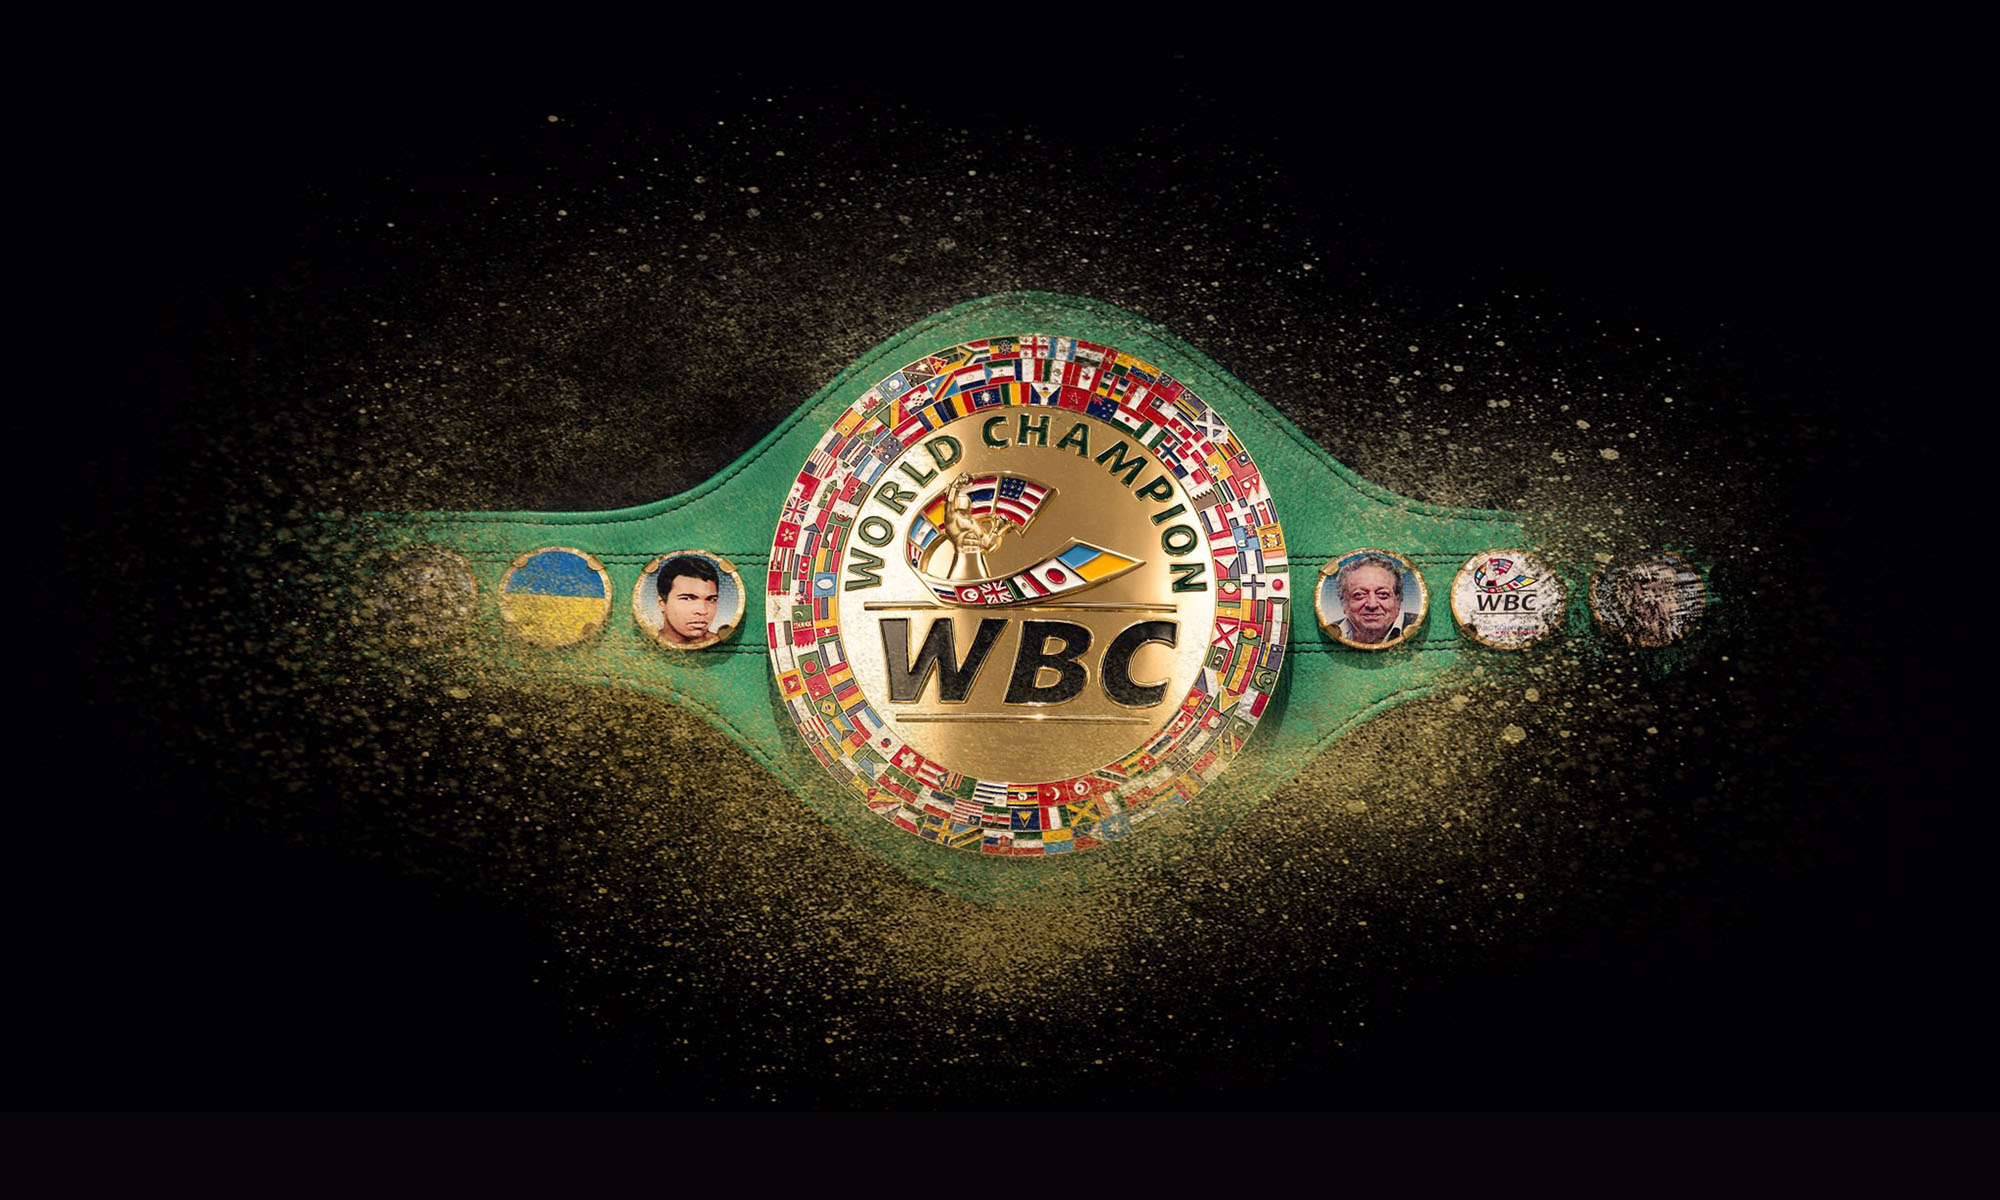 WBC International Championships